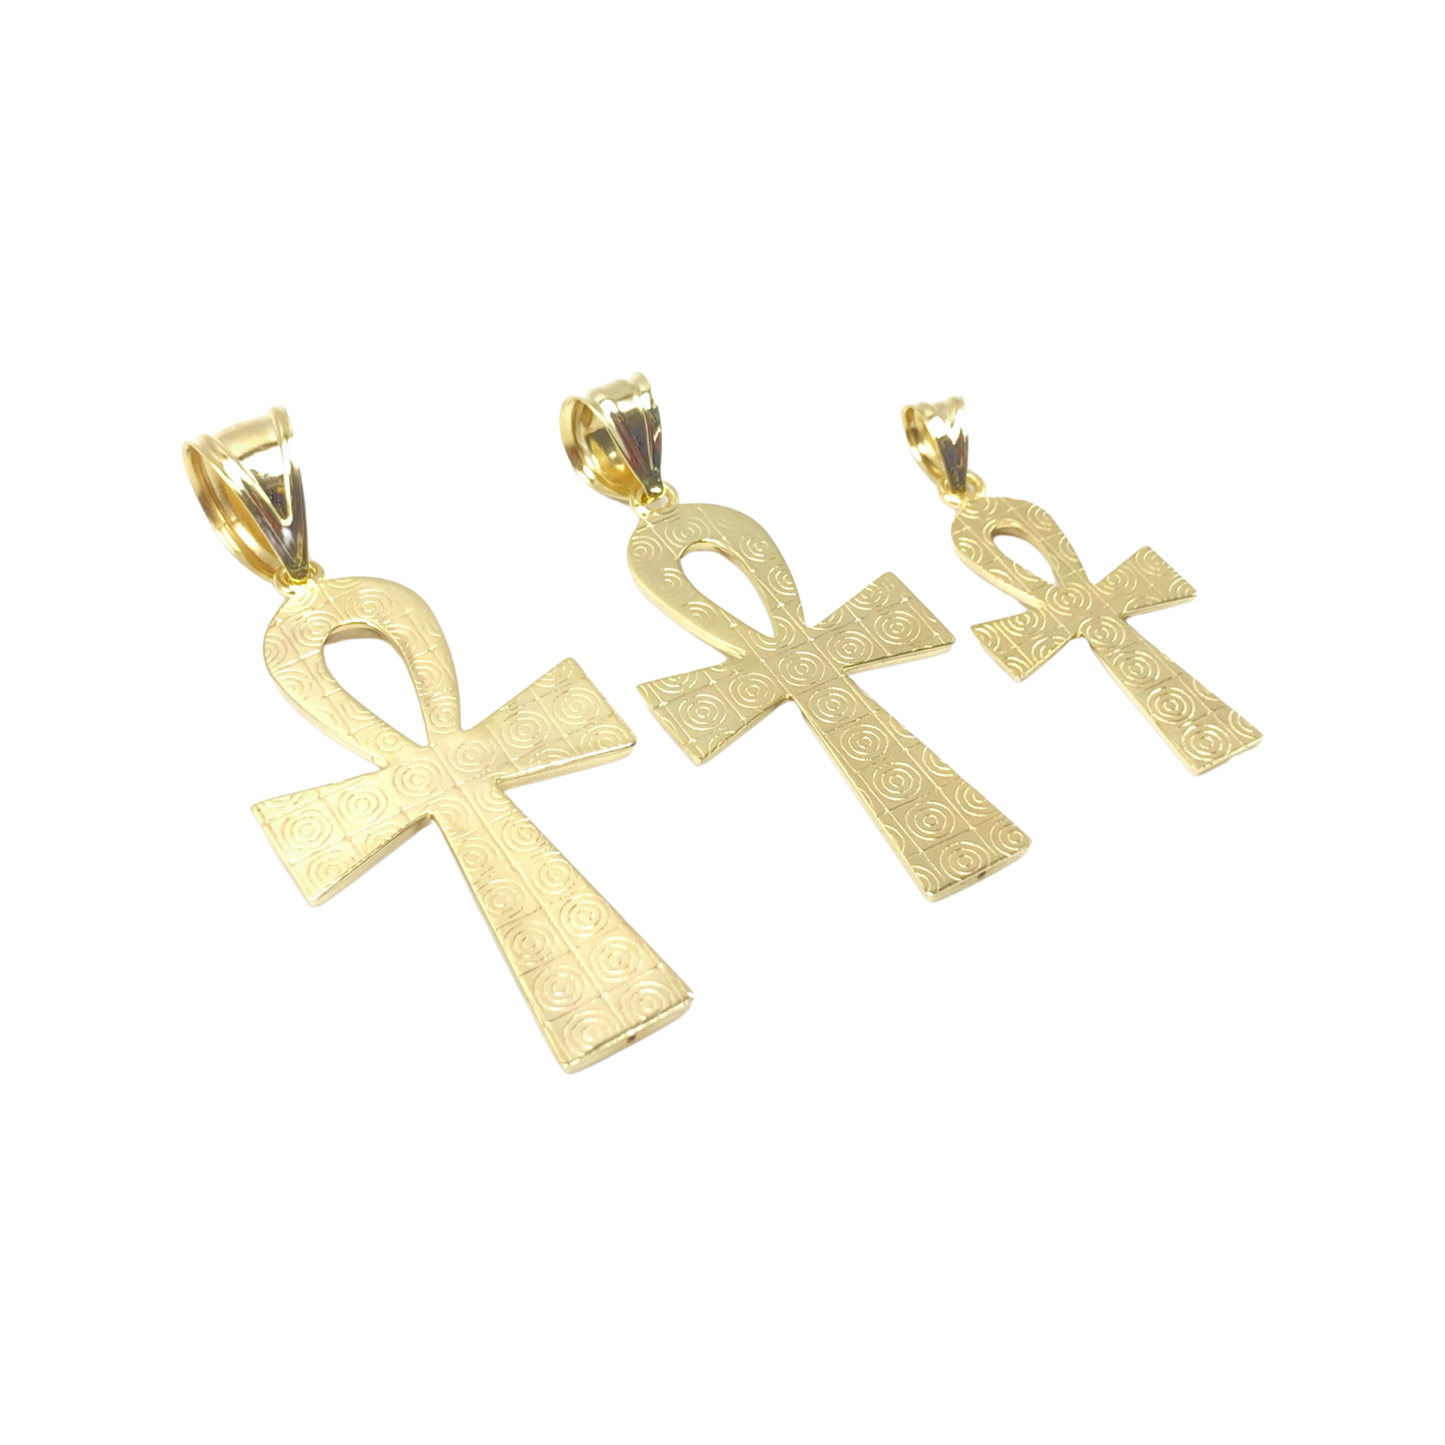 10K Yellow Gold Diamond-Cut Ankh Pendant